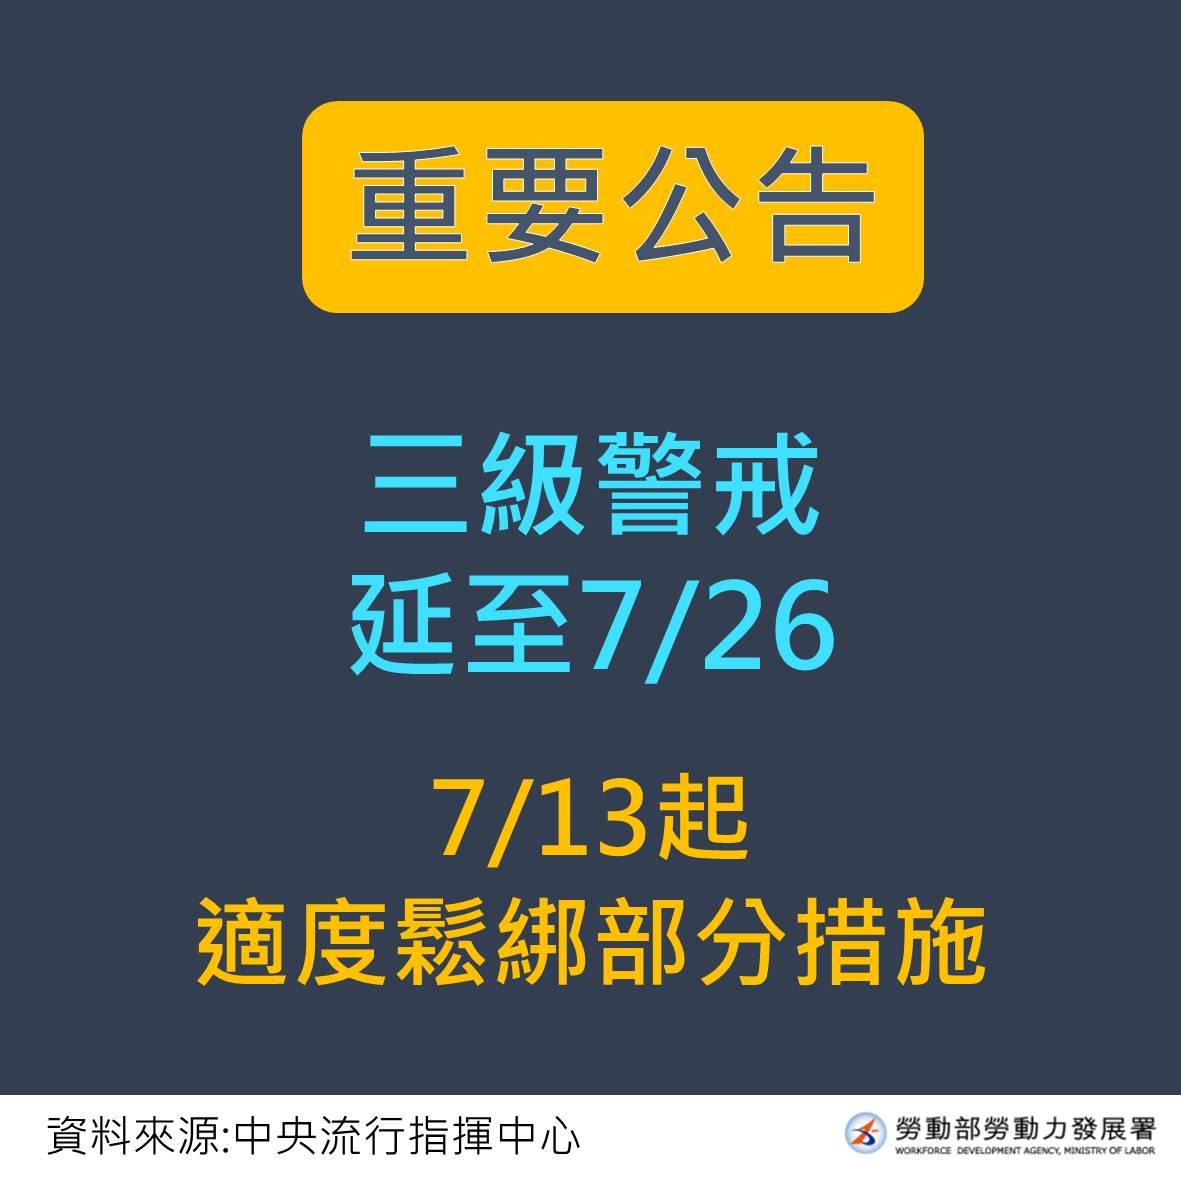 重要公告三級警戒延長至7月26日-中文.JPG